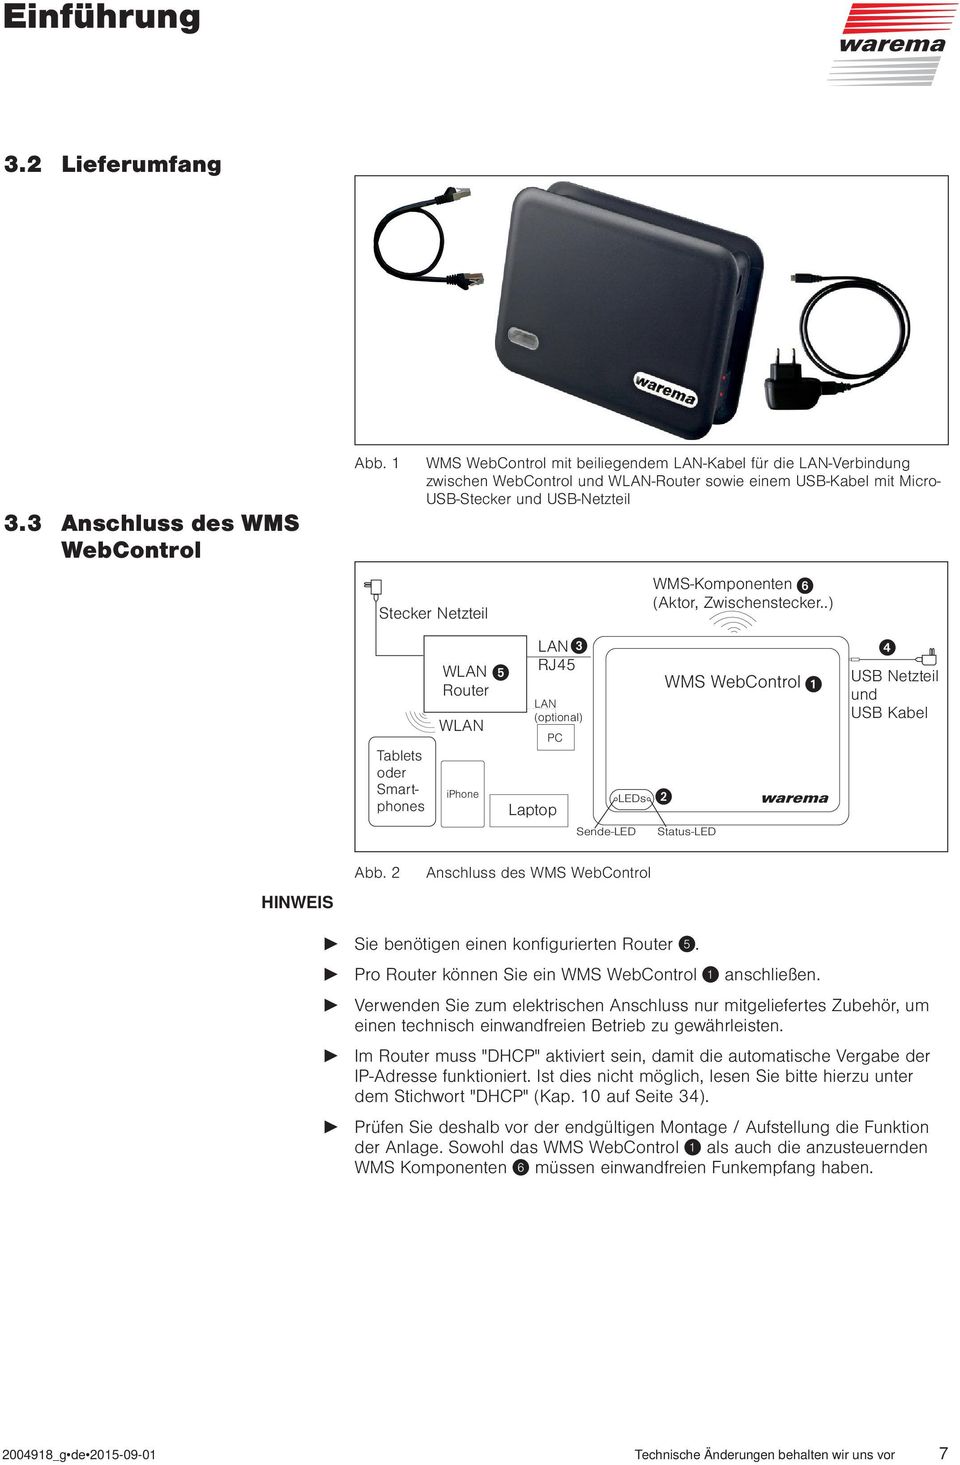 Router WLAN iphone LAN (optional) PC Laptop LAN RJ45 LEDs Sende-LED WMS-Komponenten (Aktor, Zwischenstecker..) Status-LED USB Netzteil und USB Kabel Abb.